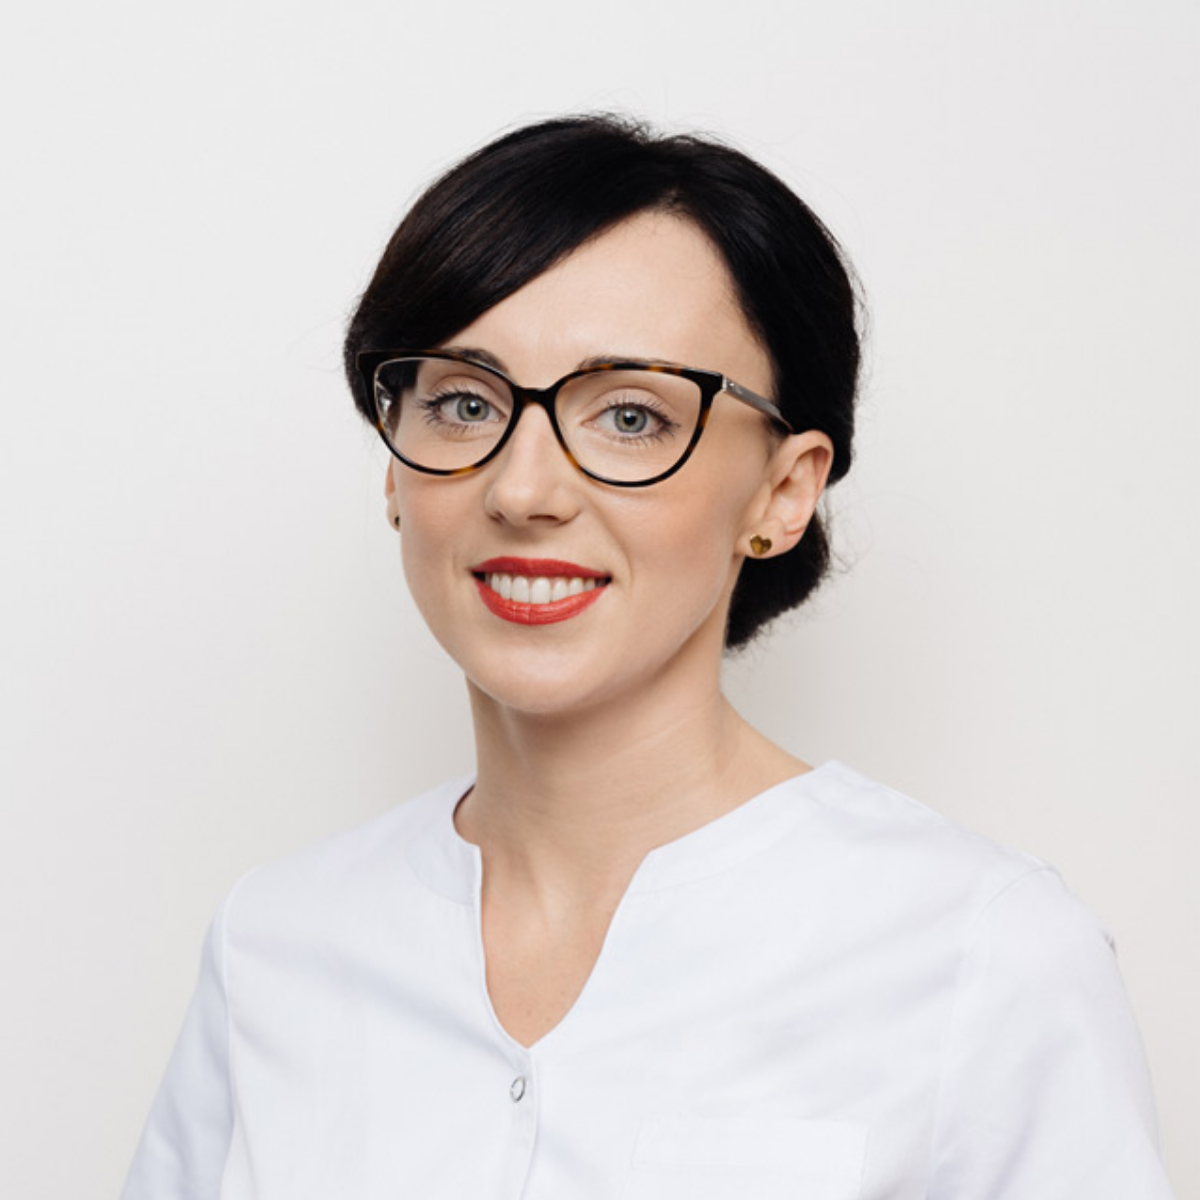 Katarzyna Chmiel, koordynator zespołu asystentek i rejestracji oraz opiekun pacjenta w gabinecie stomatologicznym EstiDental w Krakowie